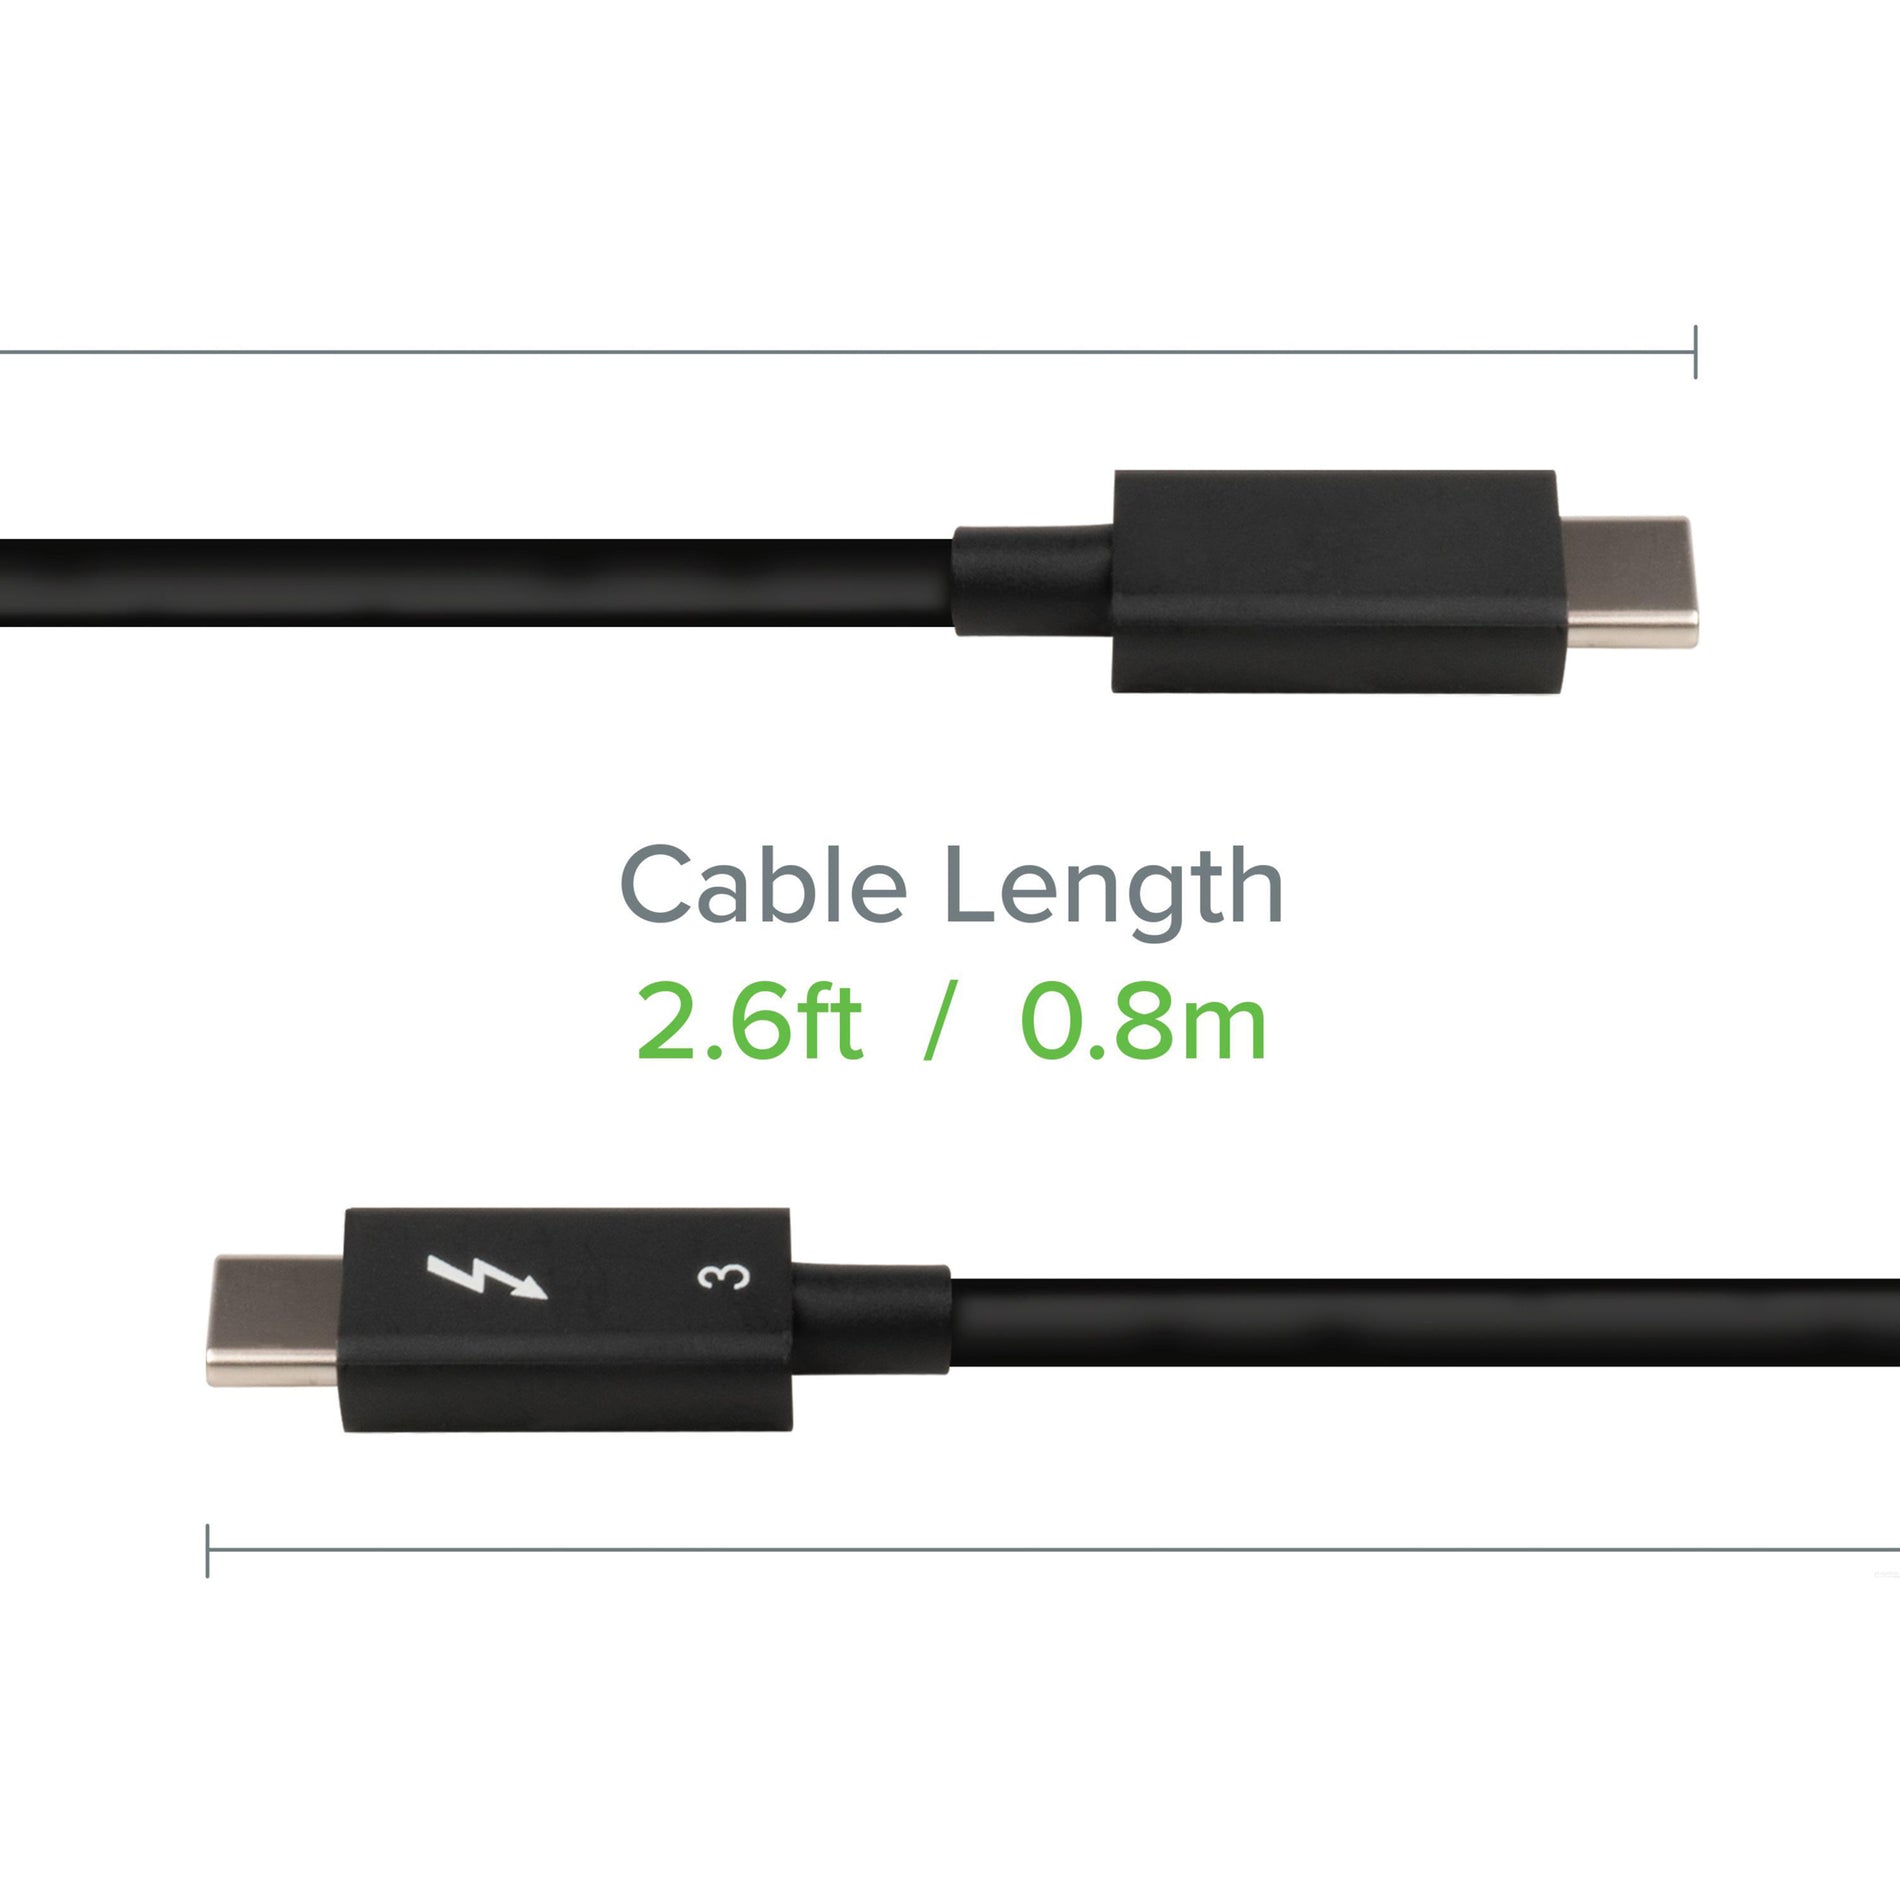 插件 TBT3-40G80CM 雷电 3 电缆（40GBPS，2.6英尺/0.8米），USB-C 电源适配器，快速数据传输 品牌名称：插件 品牌名称翻译：Plugable